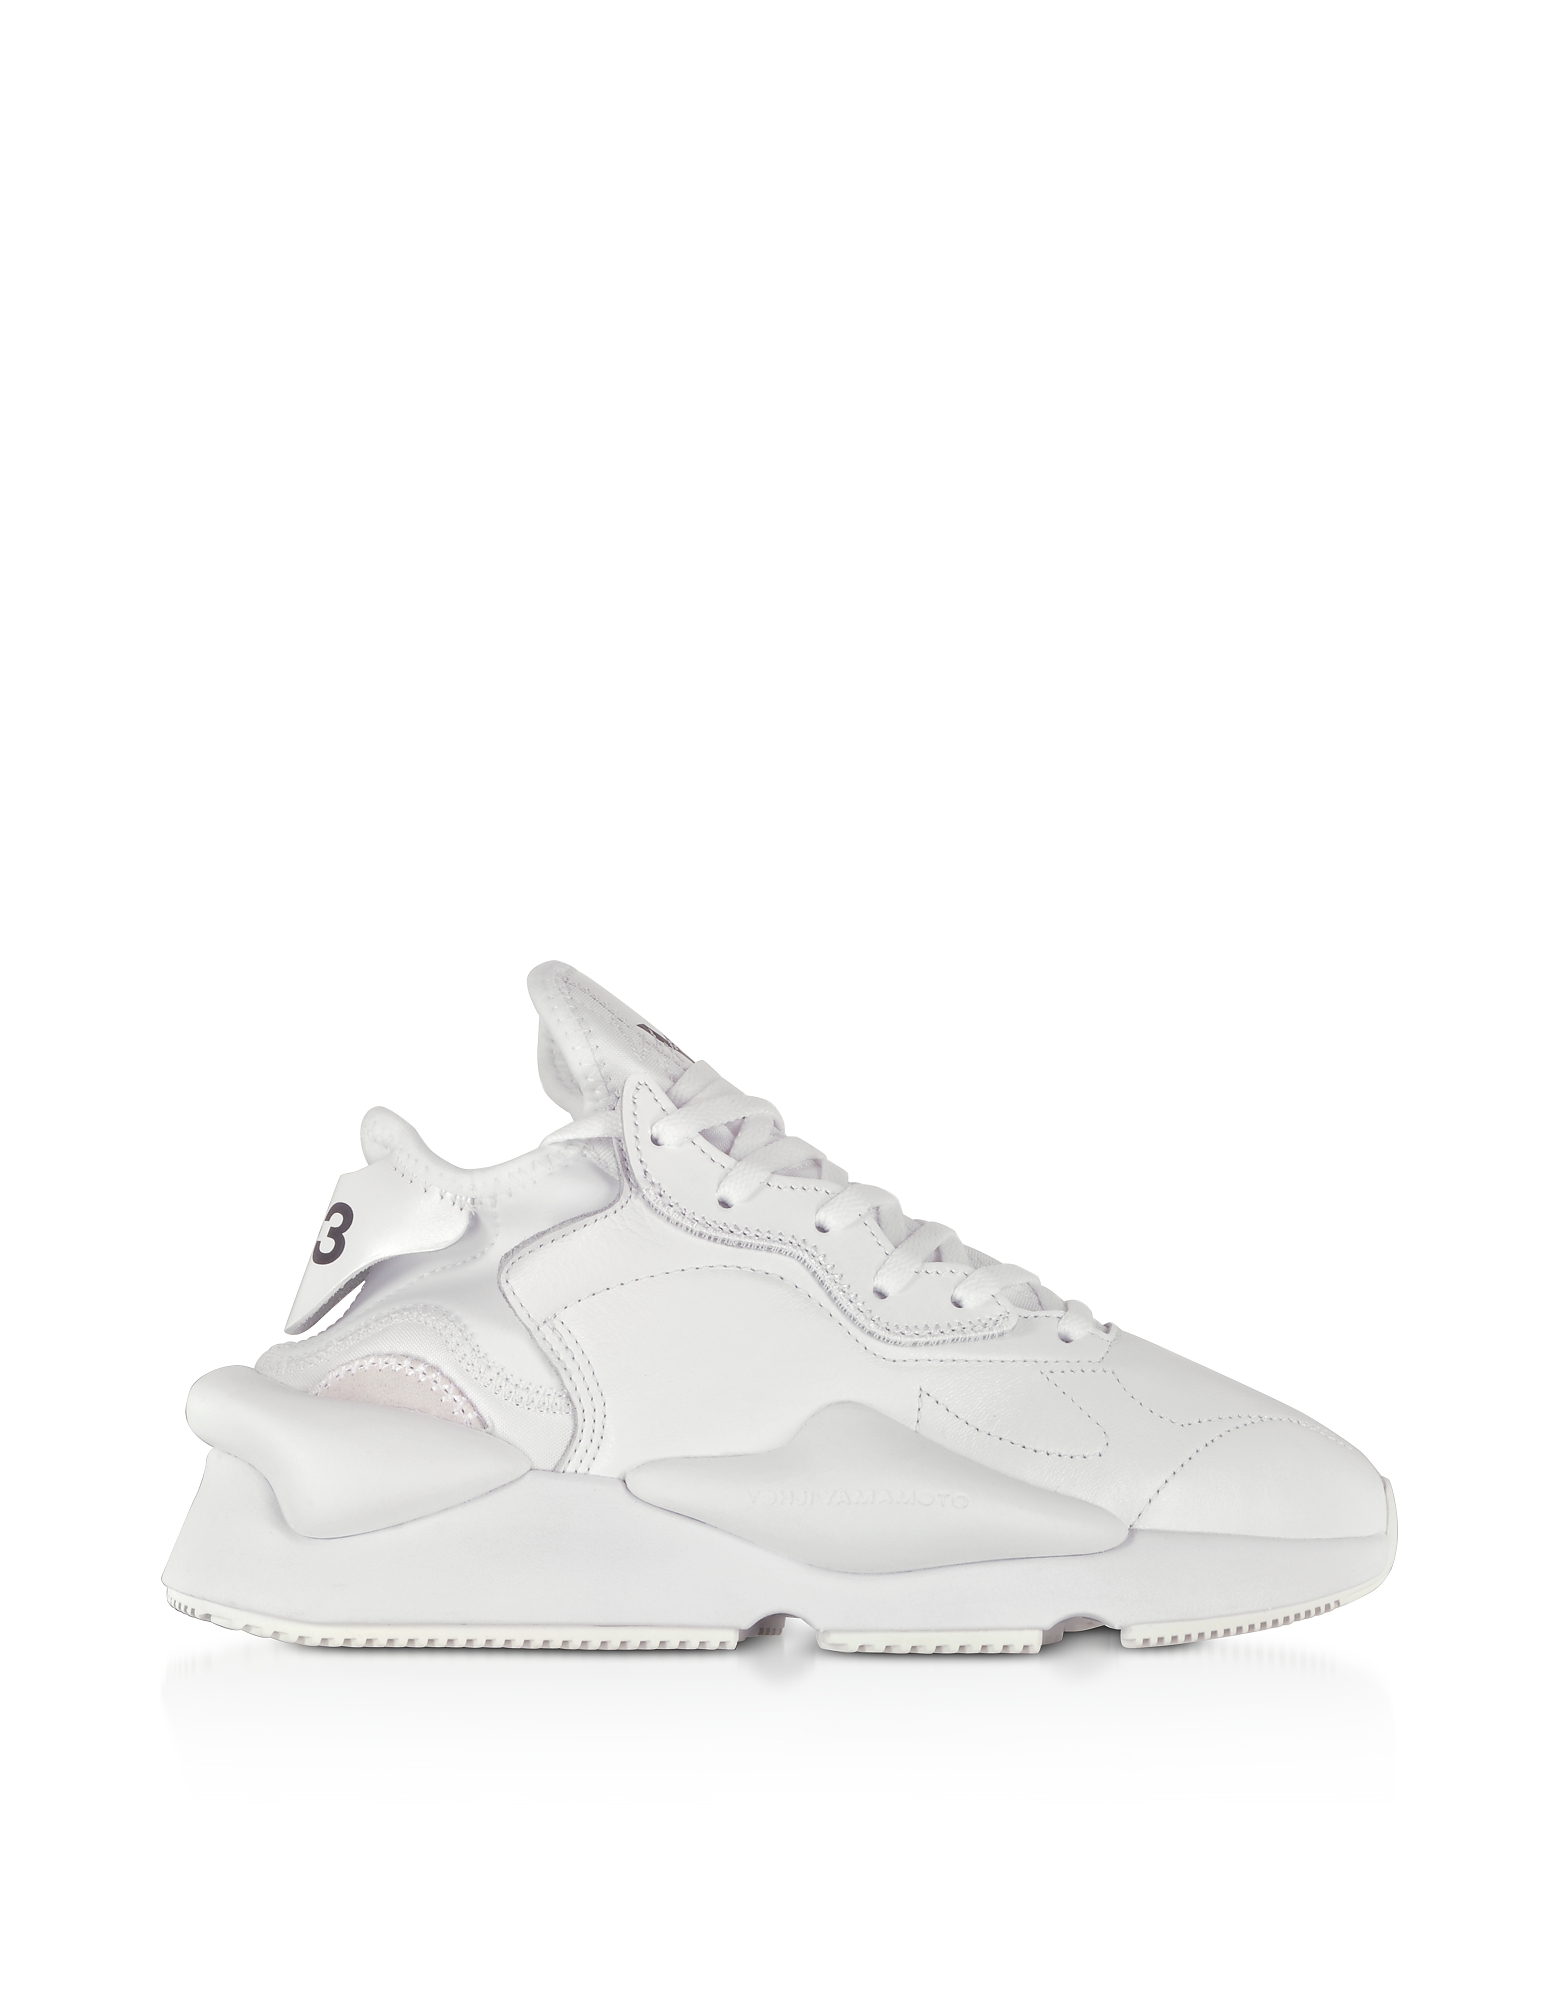 

Kaiwa White Leather Unisex Sneakers